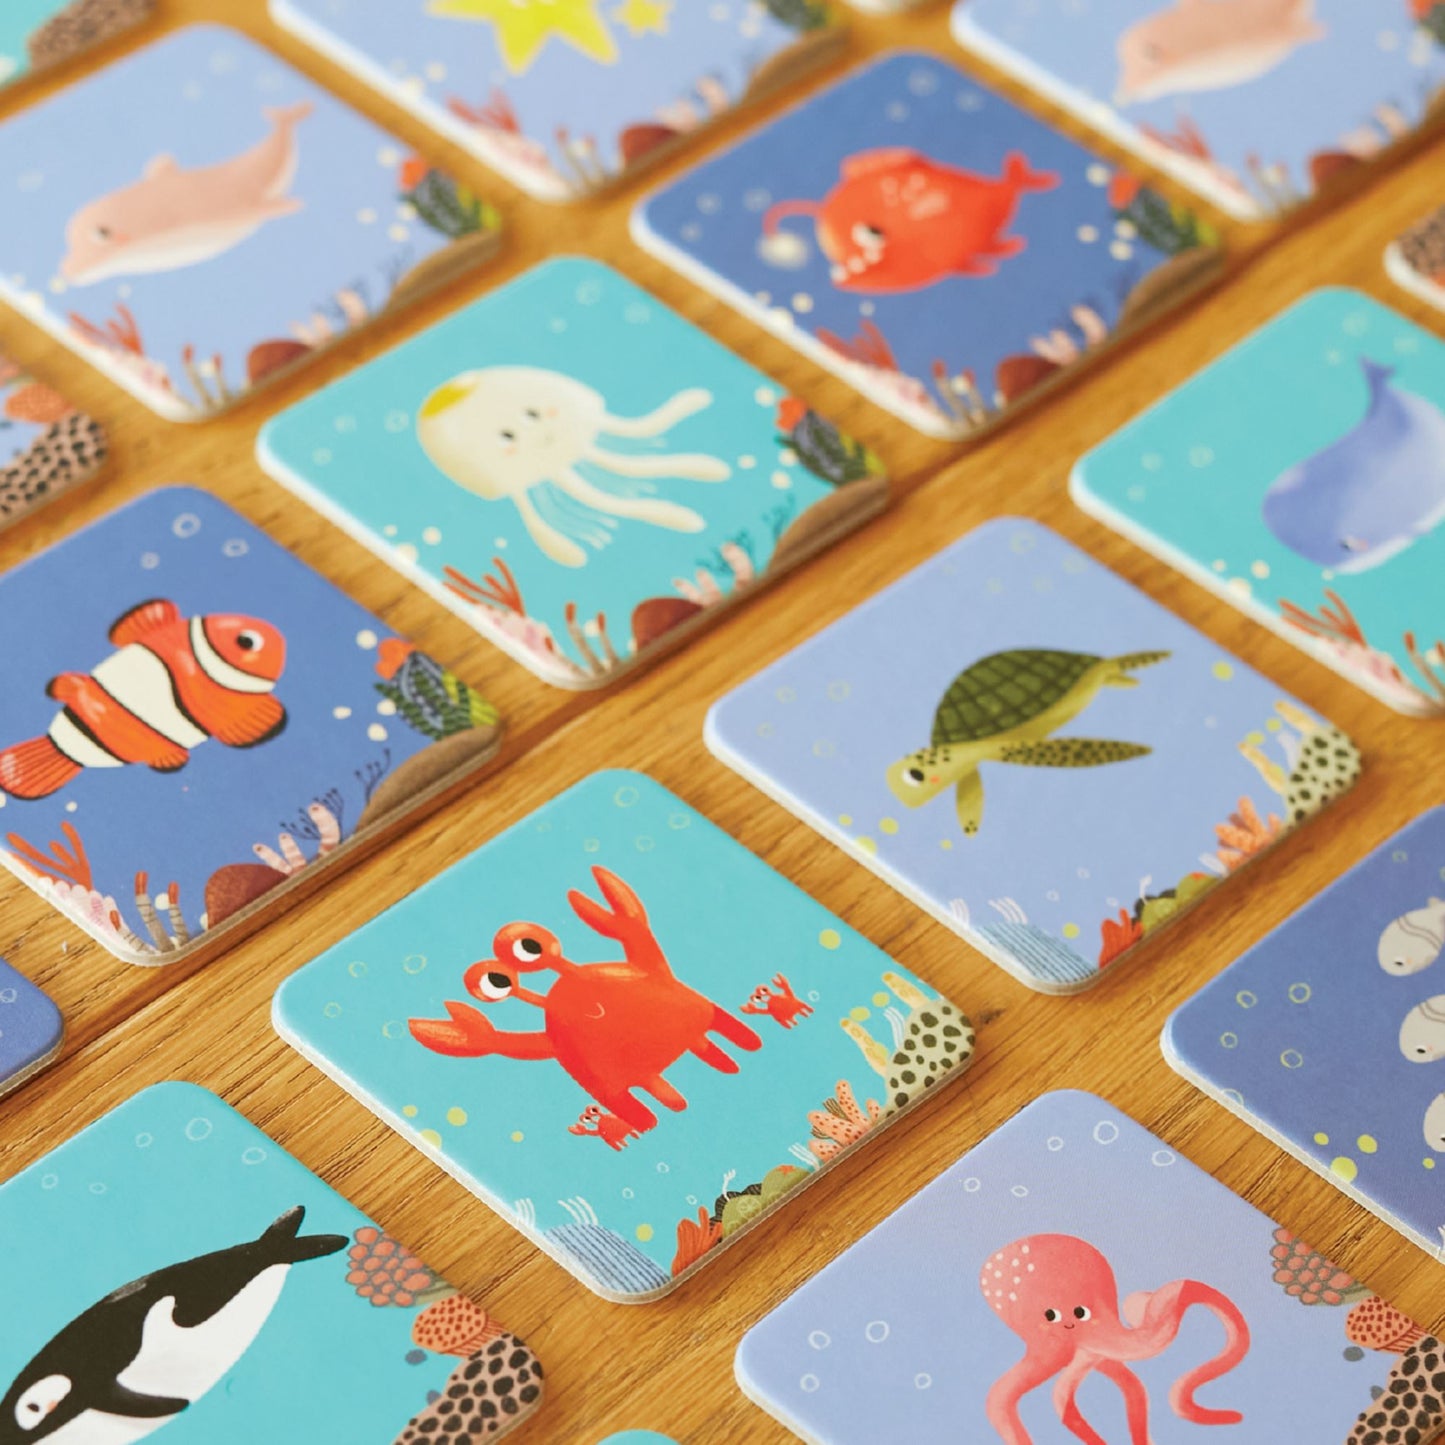 Memory Card Game 42 Kartlı Hafıza ve Eşleştirme Oyunu: Su altı moritoys 